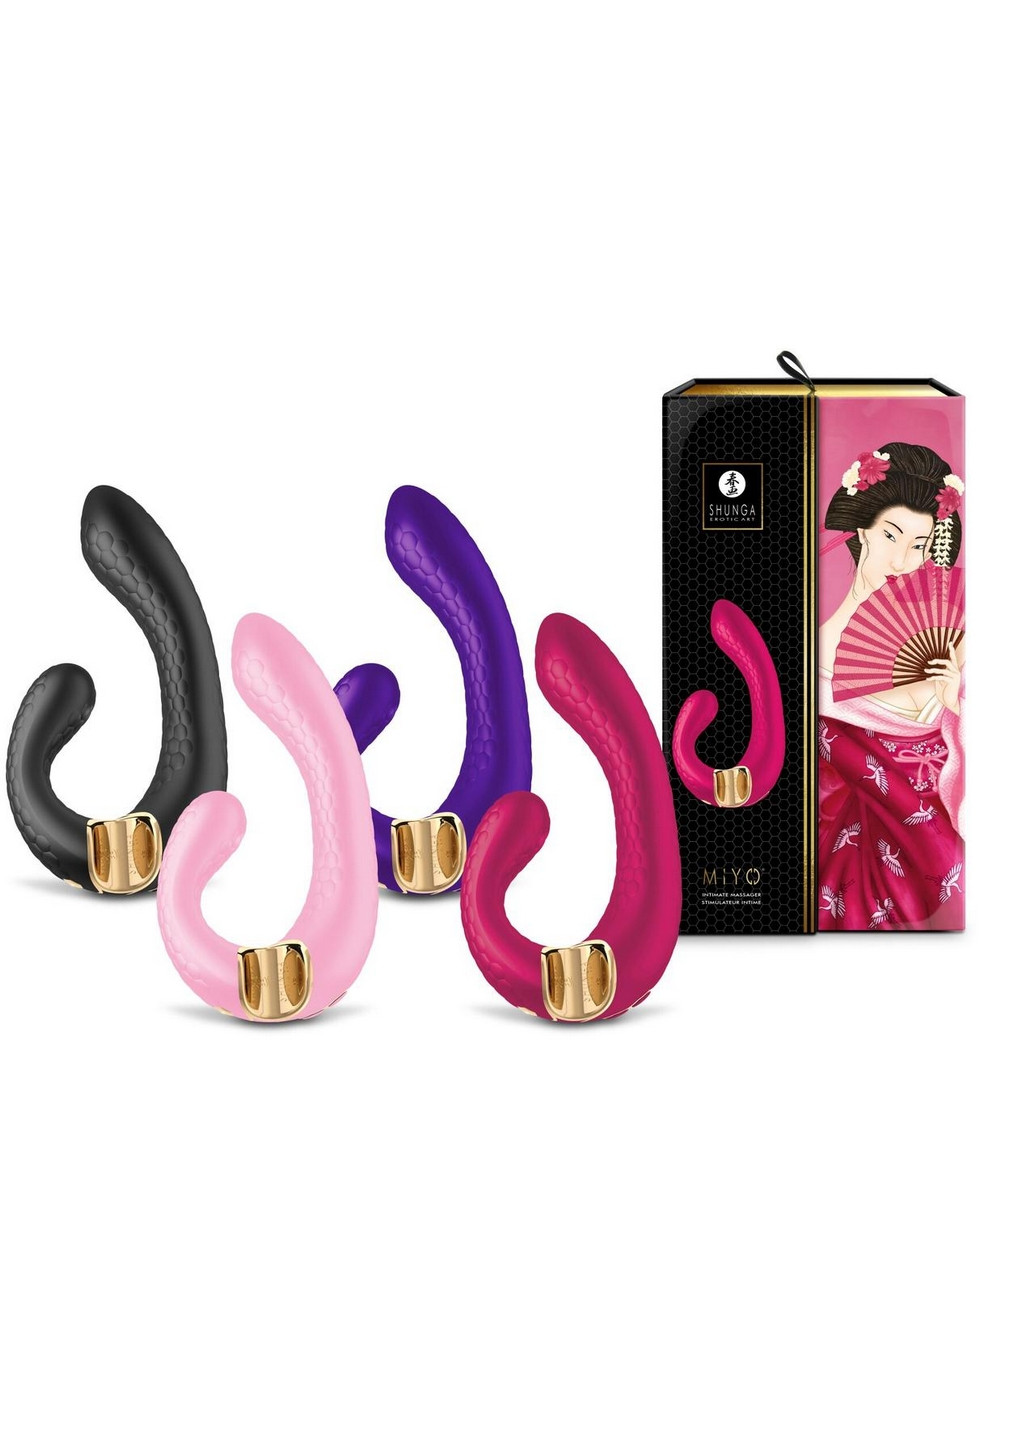 Вибратор - Miyo Intimate Massager Light Pink Shunga (260414078)